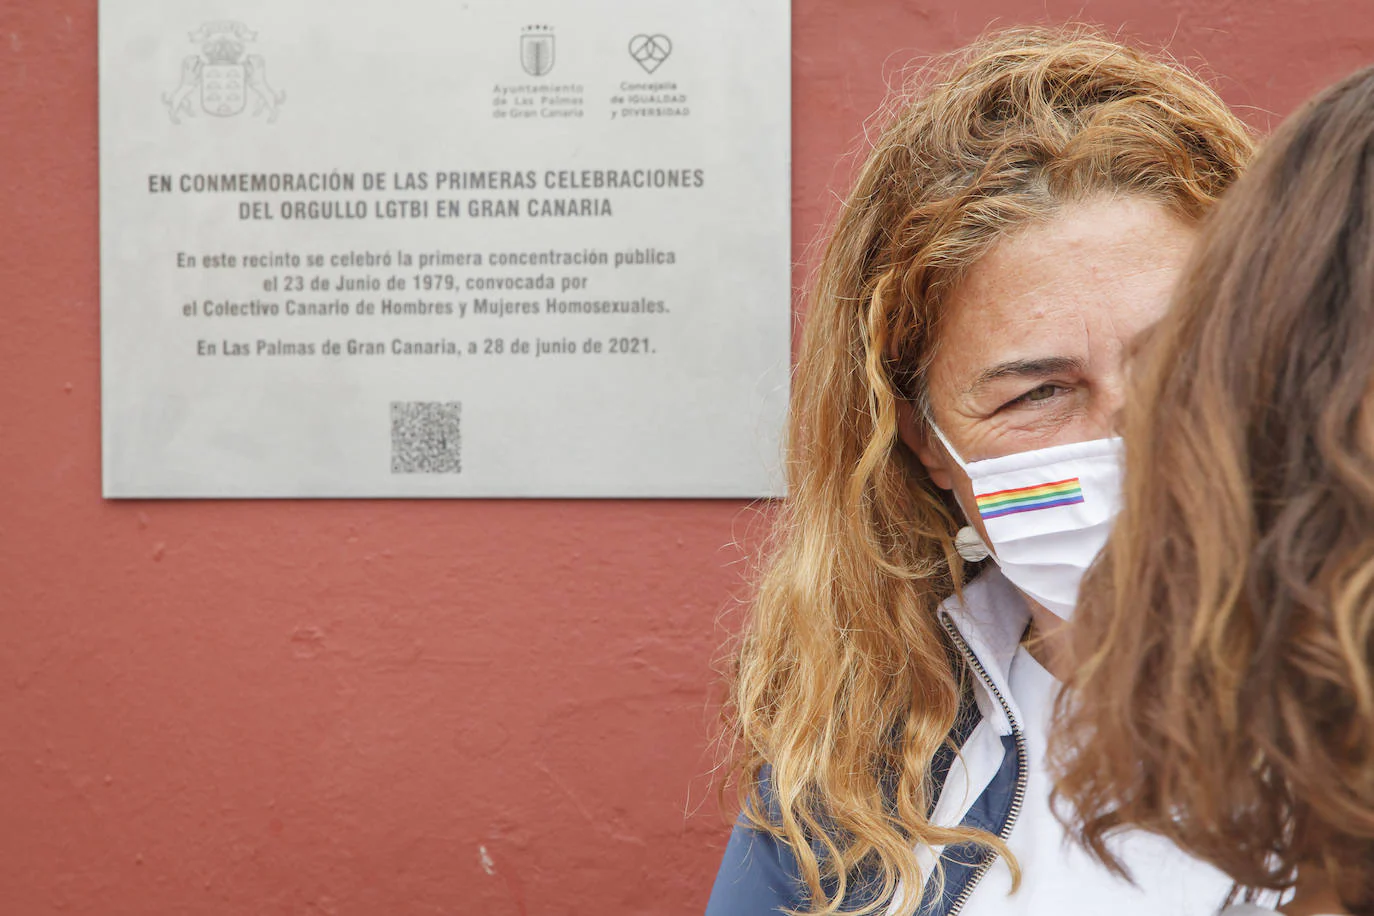 Fotos: El Gobierno de Canarias y el Ayuntamiento Las Palmas de Gran Canaria descubren una placa homenaje al colectivo LGTBI